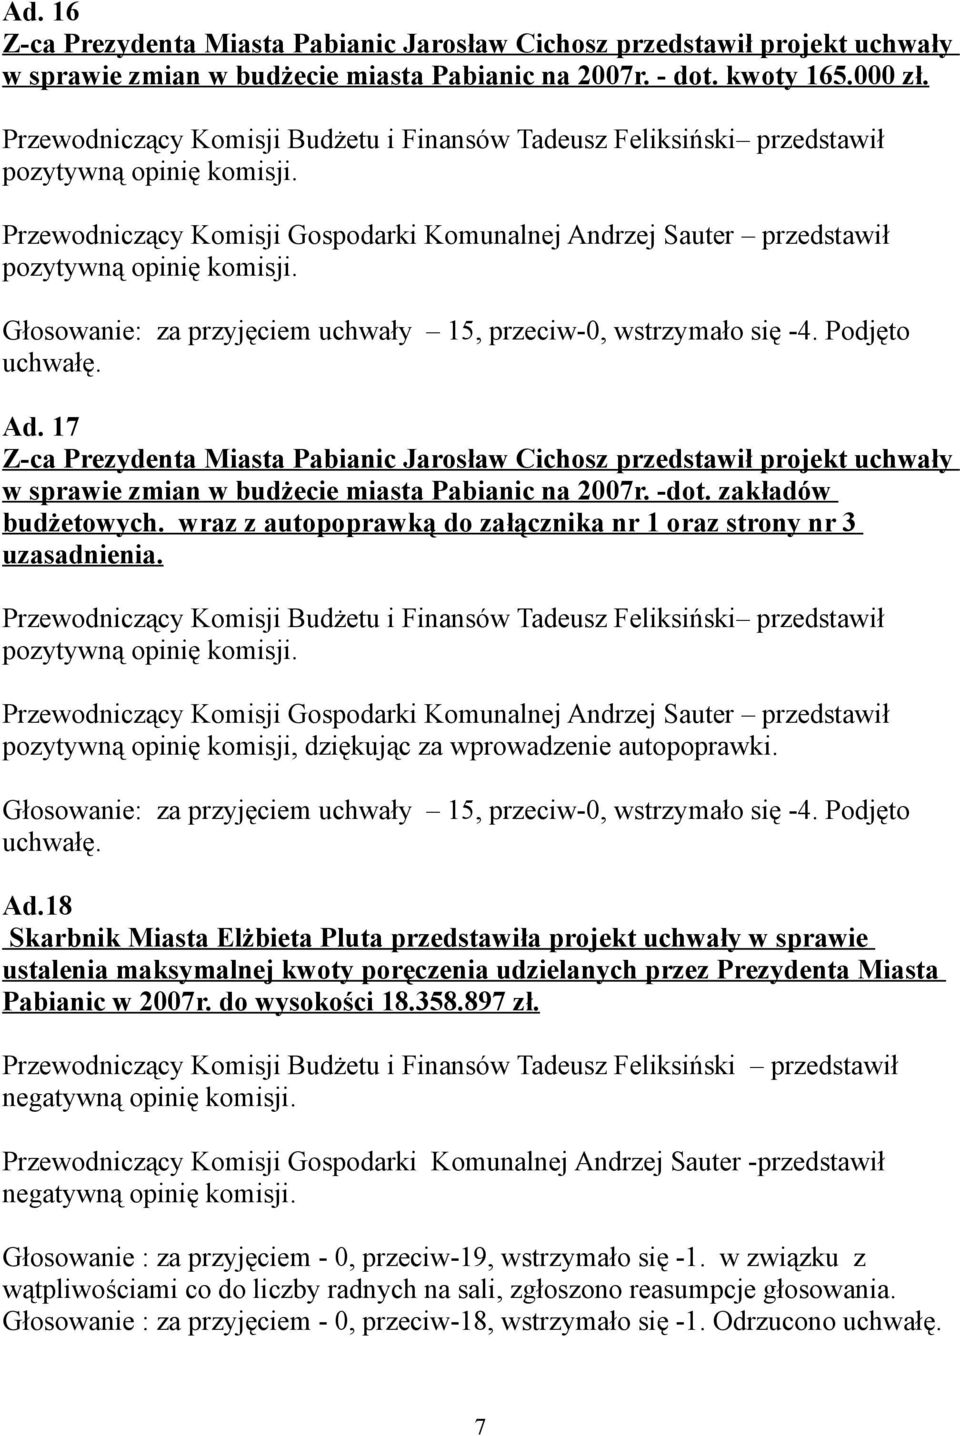 17 w sprawie zmian w budżecie miasta Pabianic na 2007r. -dot. zakładów budżetowych. wraz z autopoprawką do załącznika nr 1 oraz strony nr 3 uzasadnienia.